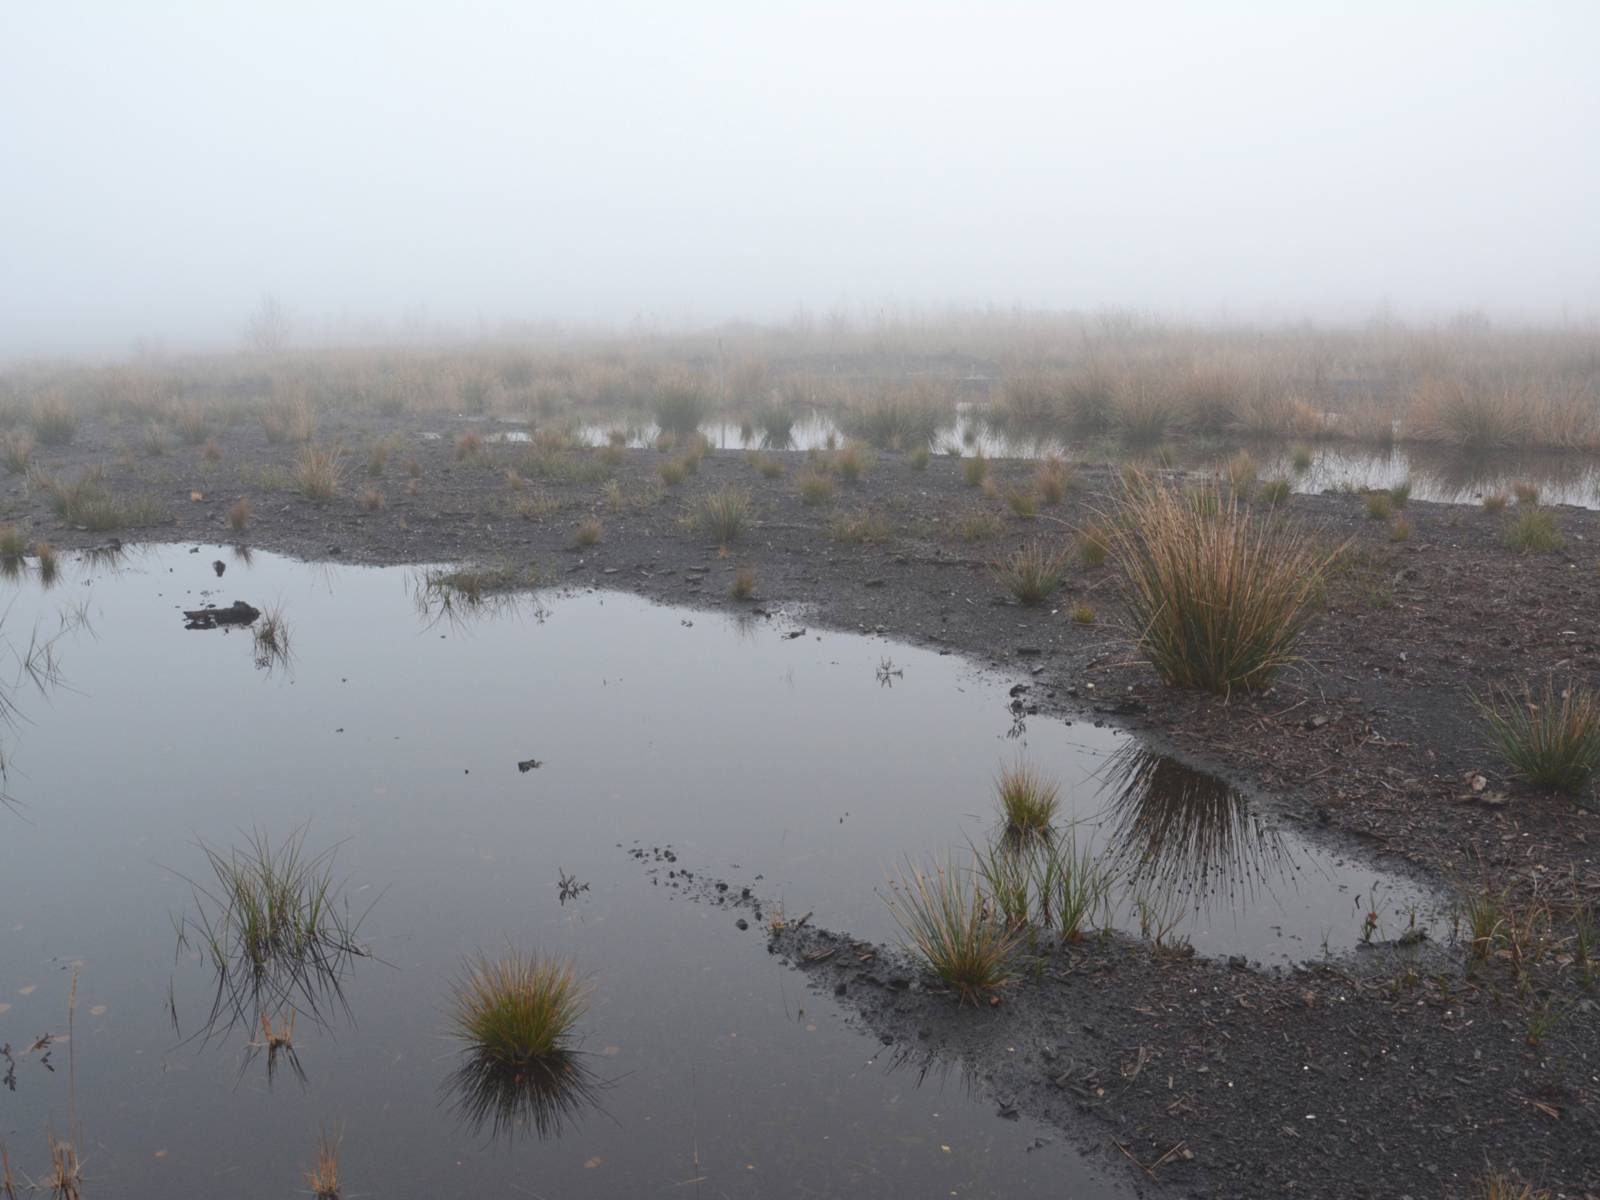 Moorlandschaft mit Wasser, einzelnen Schilfbüscheln im Nebel